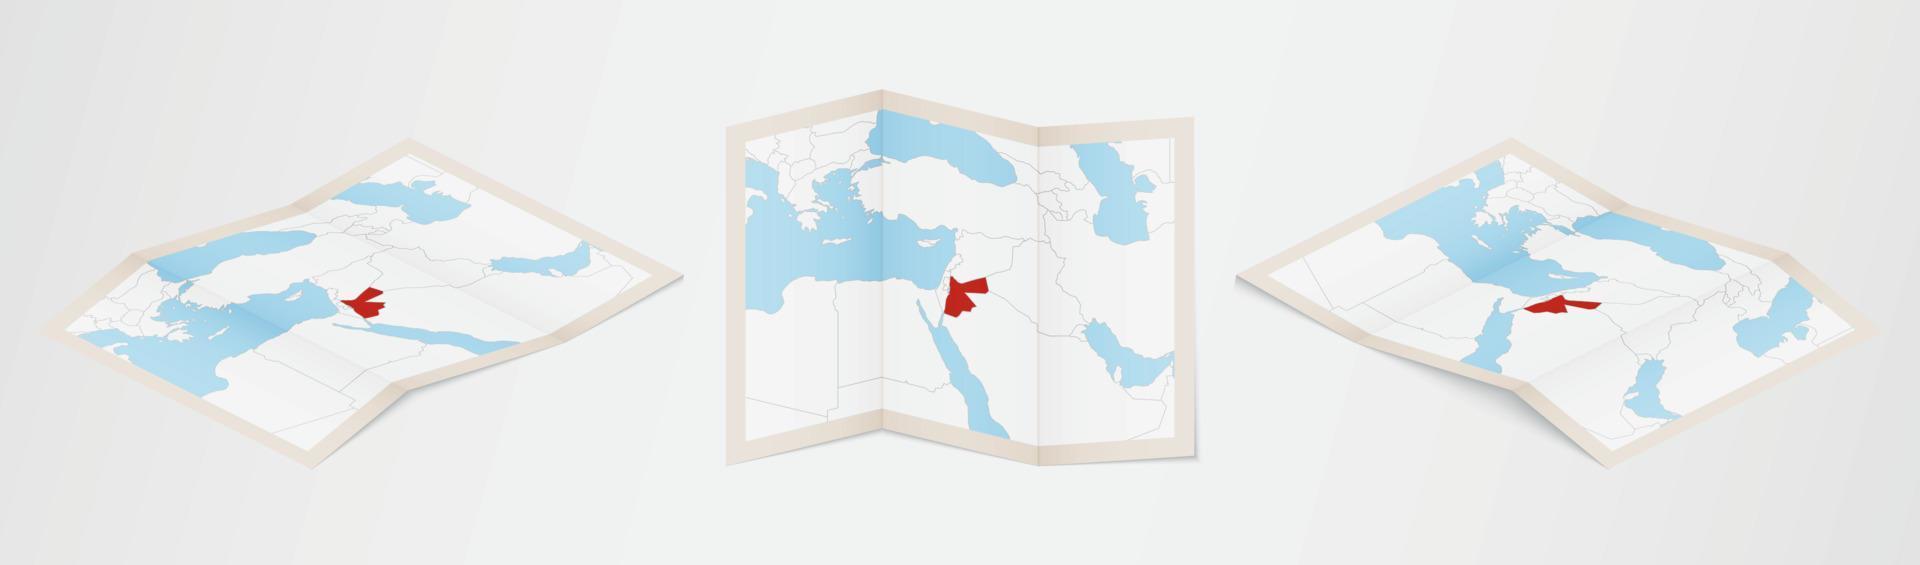 mapa plegado de jordania en tres versiones diferentes. vector